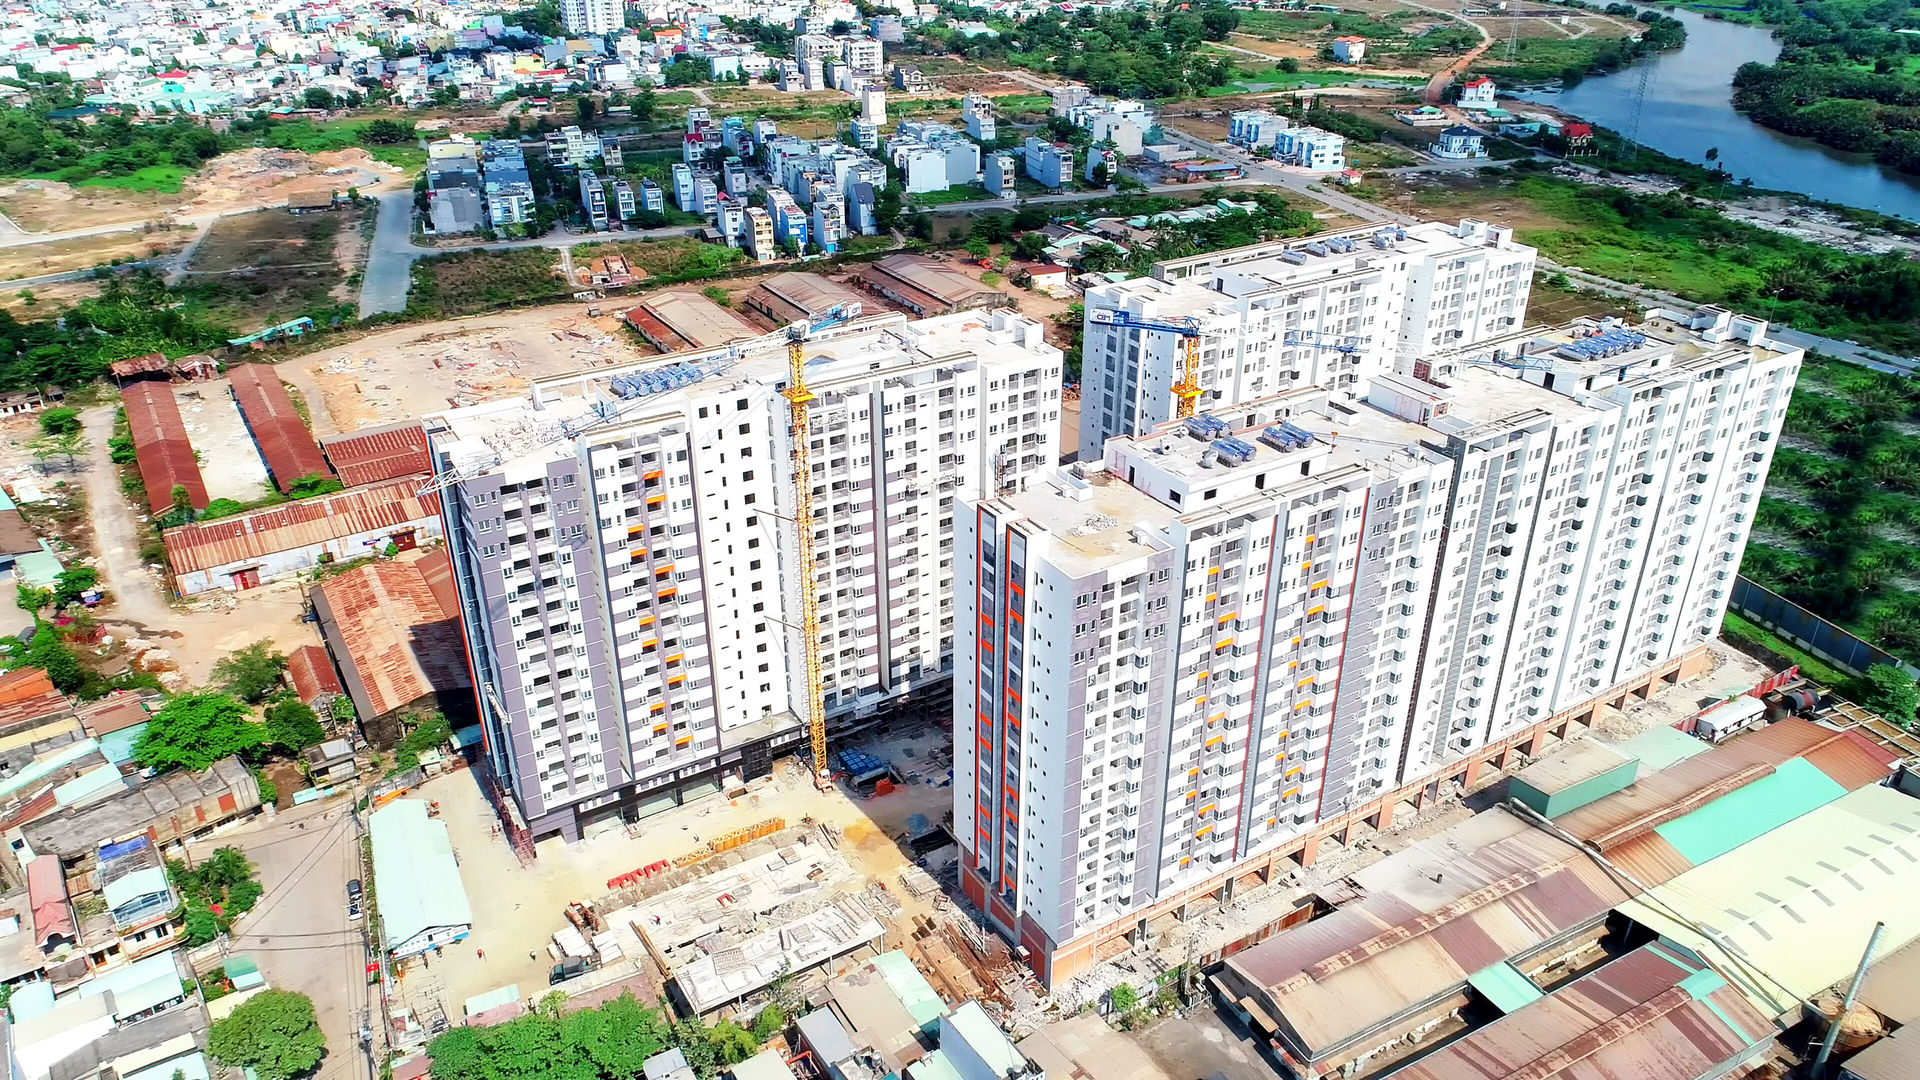   Các dự án trong khu vực đề án “đô thị sáng tạo” hiện có mức gia tăng giá trị cao, như tại  Him Lam   Phú An  với mức tăng gần 30%. (Ảnh: TuanLam).  